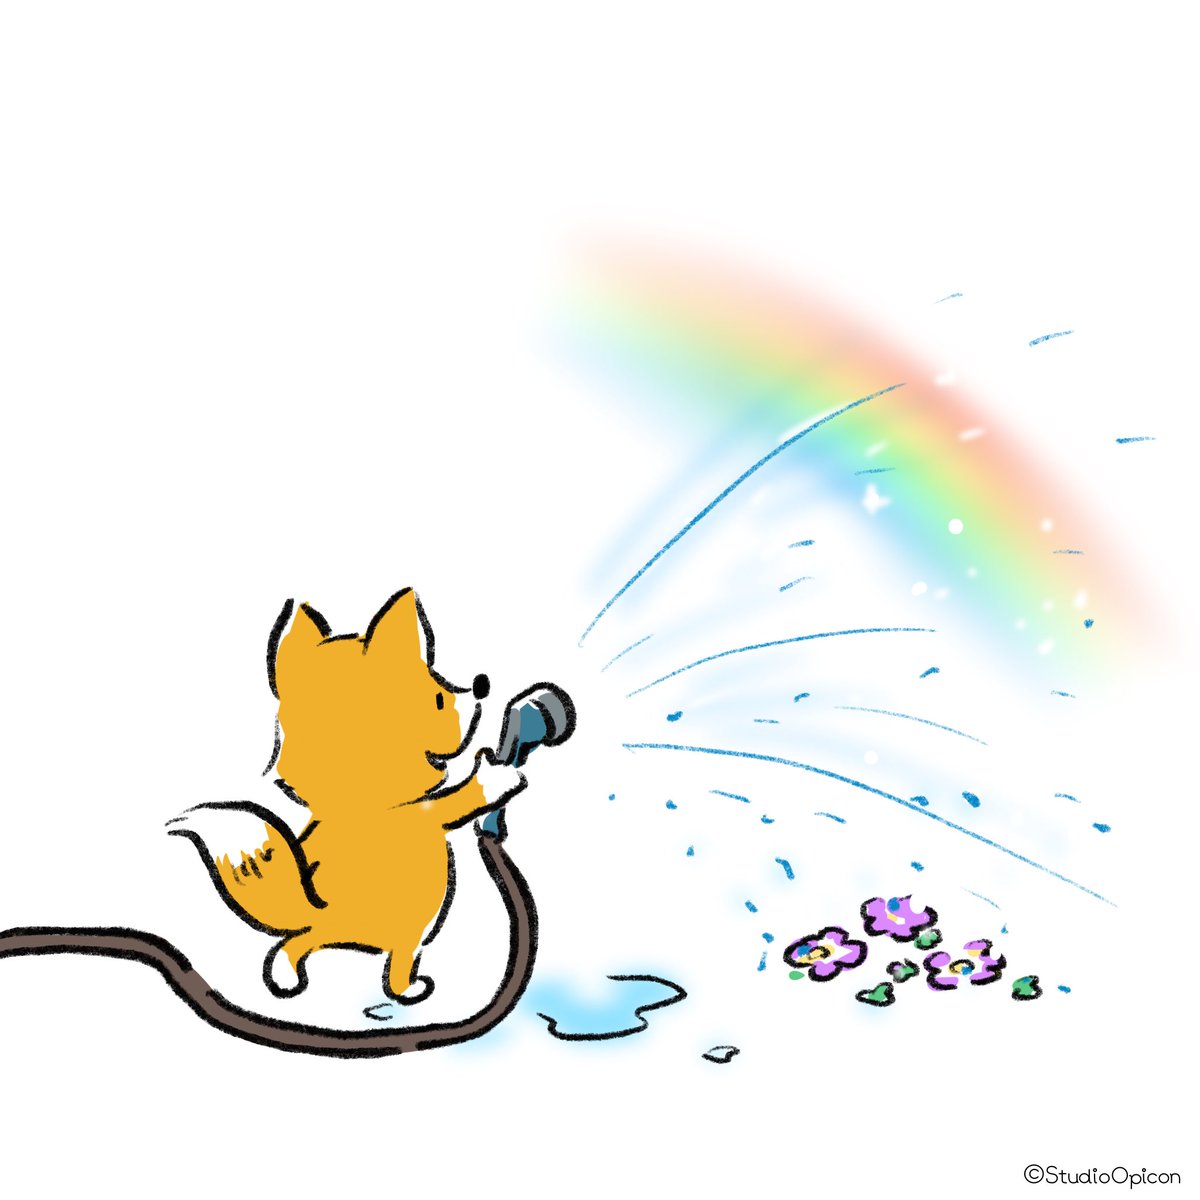 Studioopicon 虹できたよ イラスト キャラクター 虹 キツネ 水やり 虹をつくろう 虹見つけた 動物イラスト 和み系キャラ ゆるいイラスト Illustration Character Makearainbow Findarainbow Rainbow Watering Fox